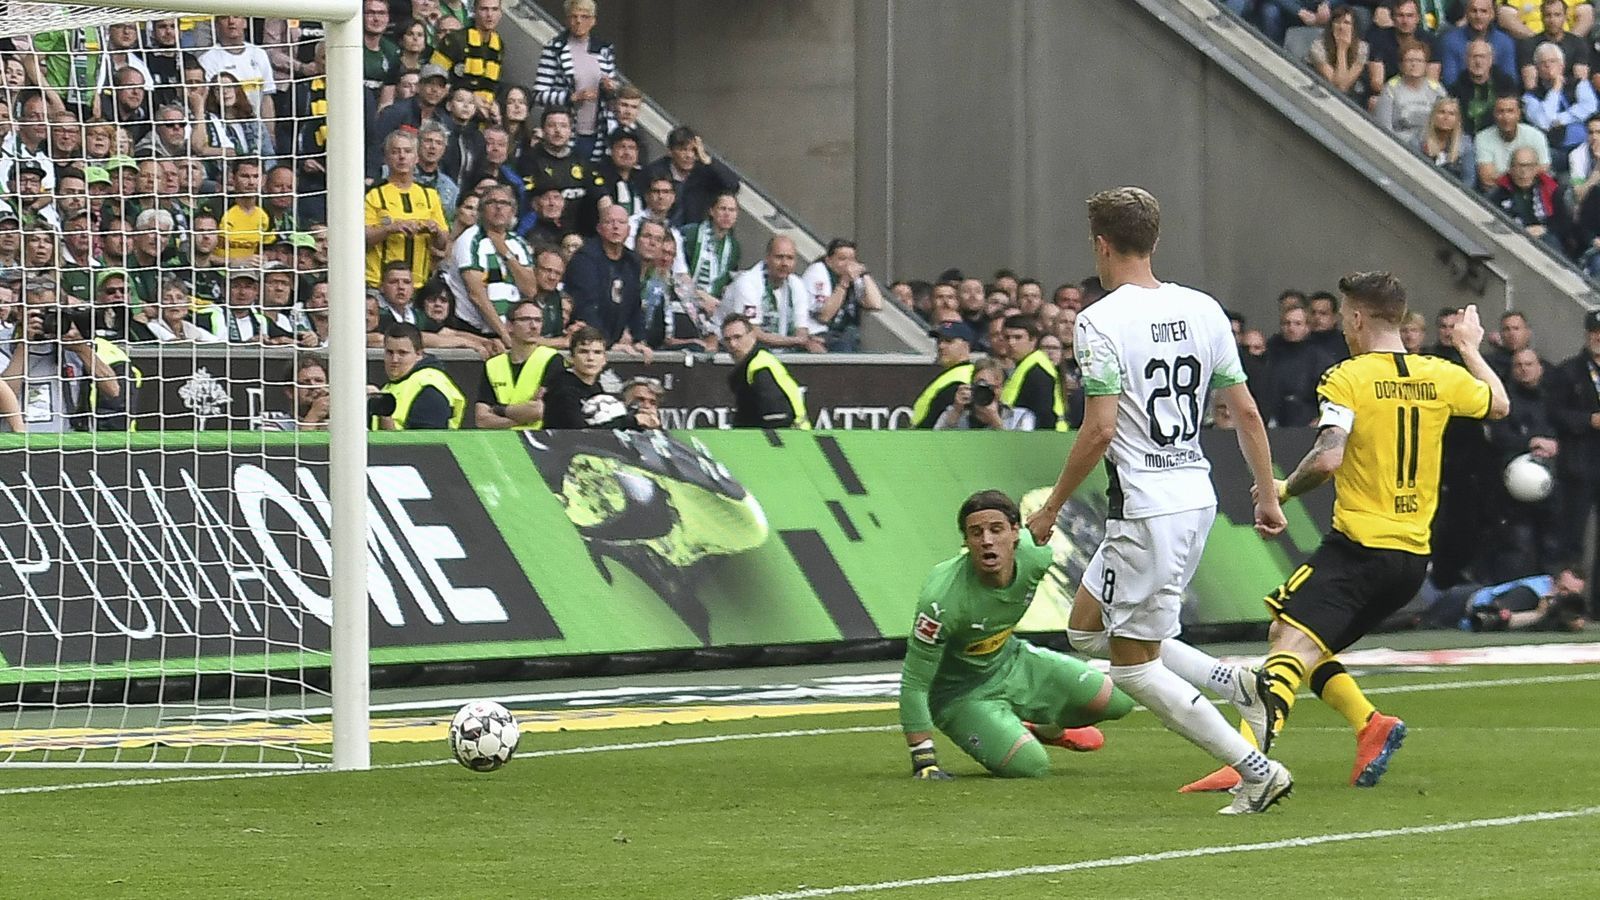 
                <strong>Marco Reus erhöht auf 2:0</strong><br>
                Die Dortmunder machen ihre Hausaufgaben. Marco Reus schiebt in der 54. Minute cool ein. Doch die Konkurrenz aus Bayern stolpert nicht.
              